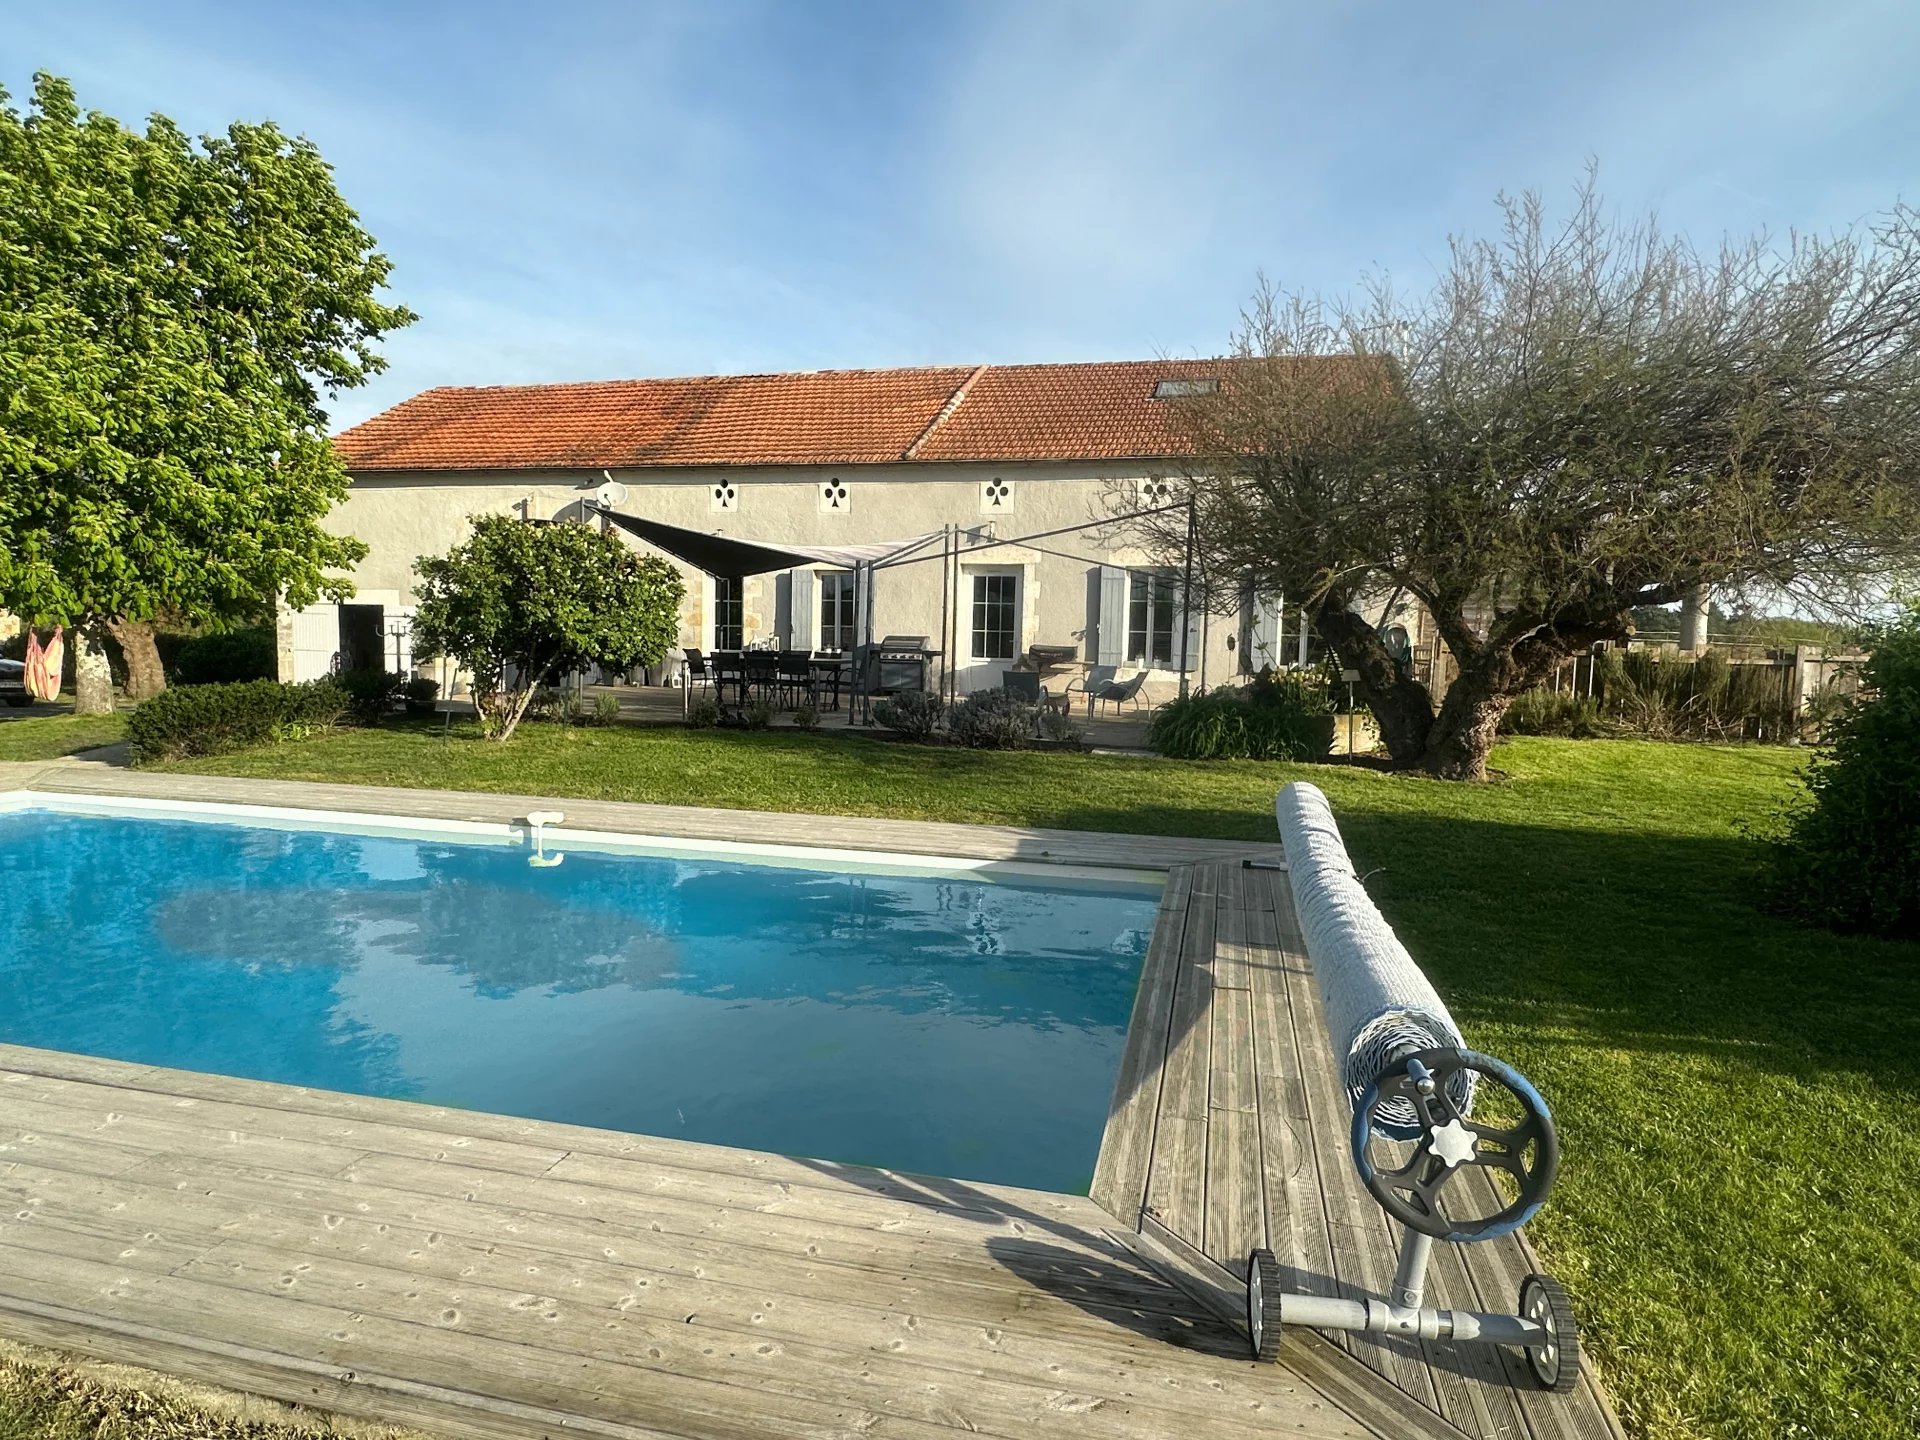 Maison de campagne avec grange et piscine située entre Ste-Foy-la-Grande et Montpon Menestérol